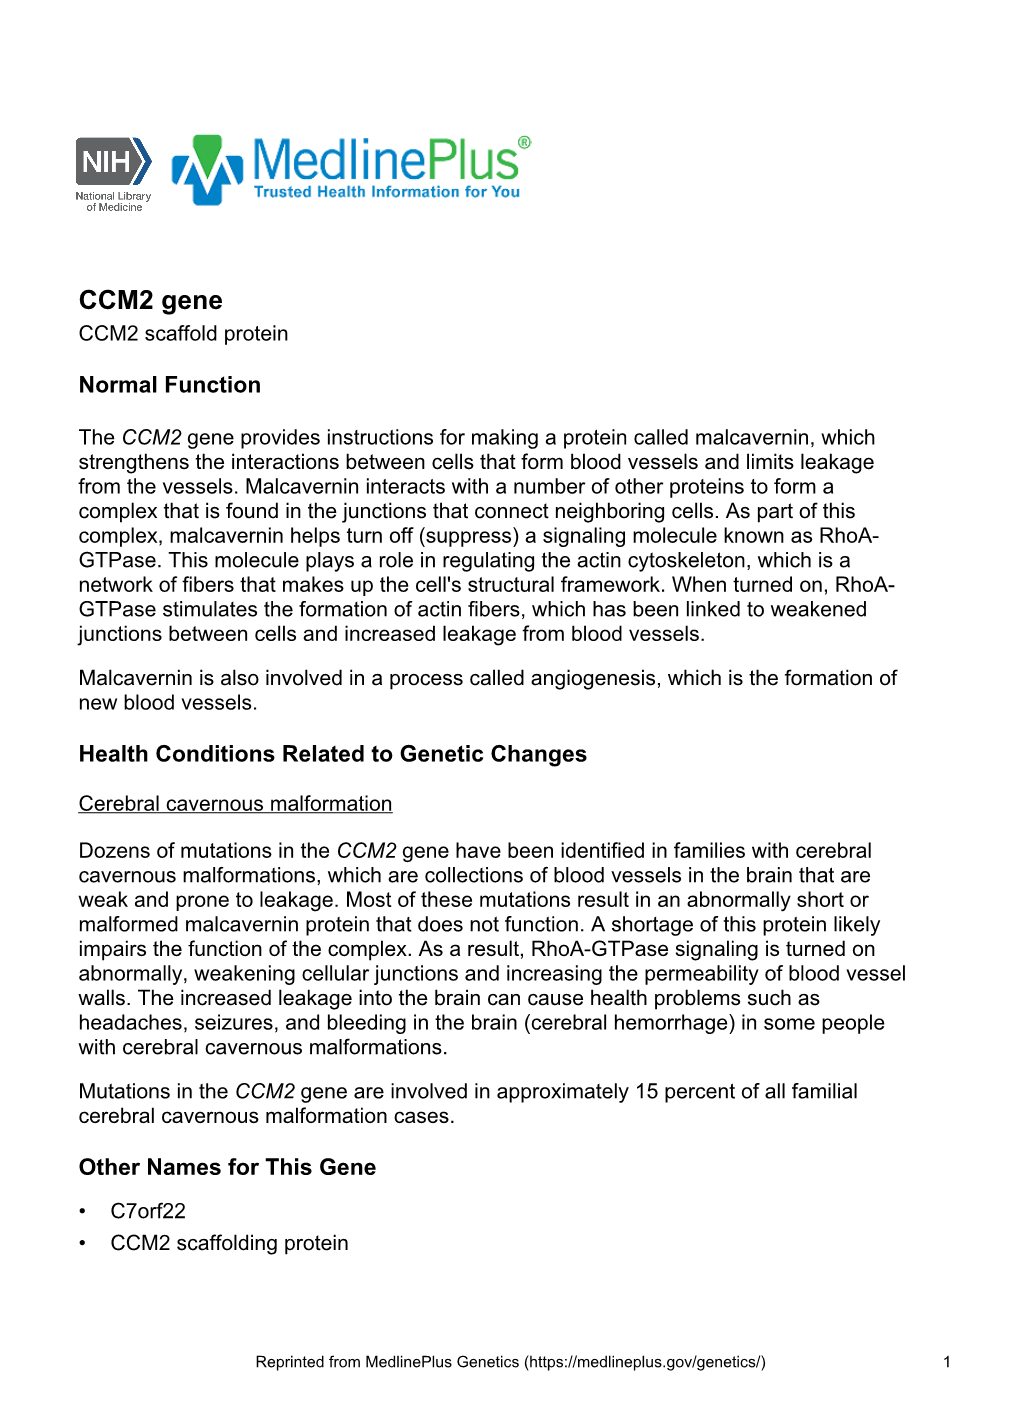 CCM2 Gene CCM2 Scaffold Protein